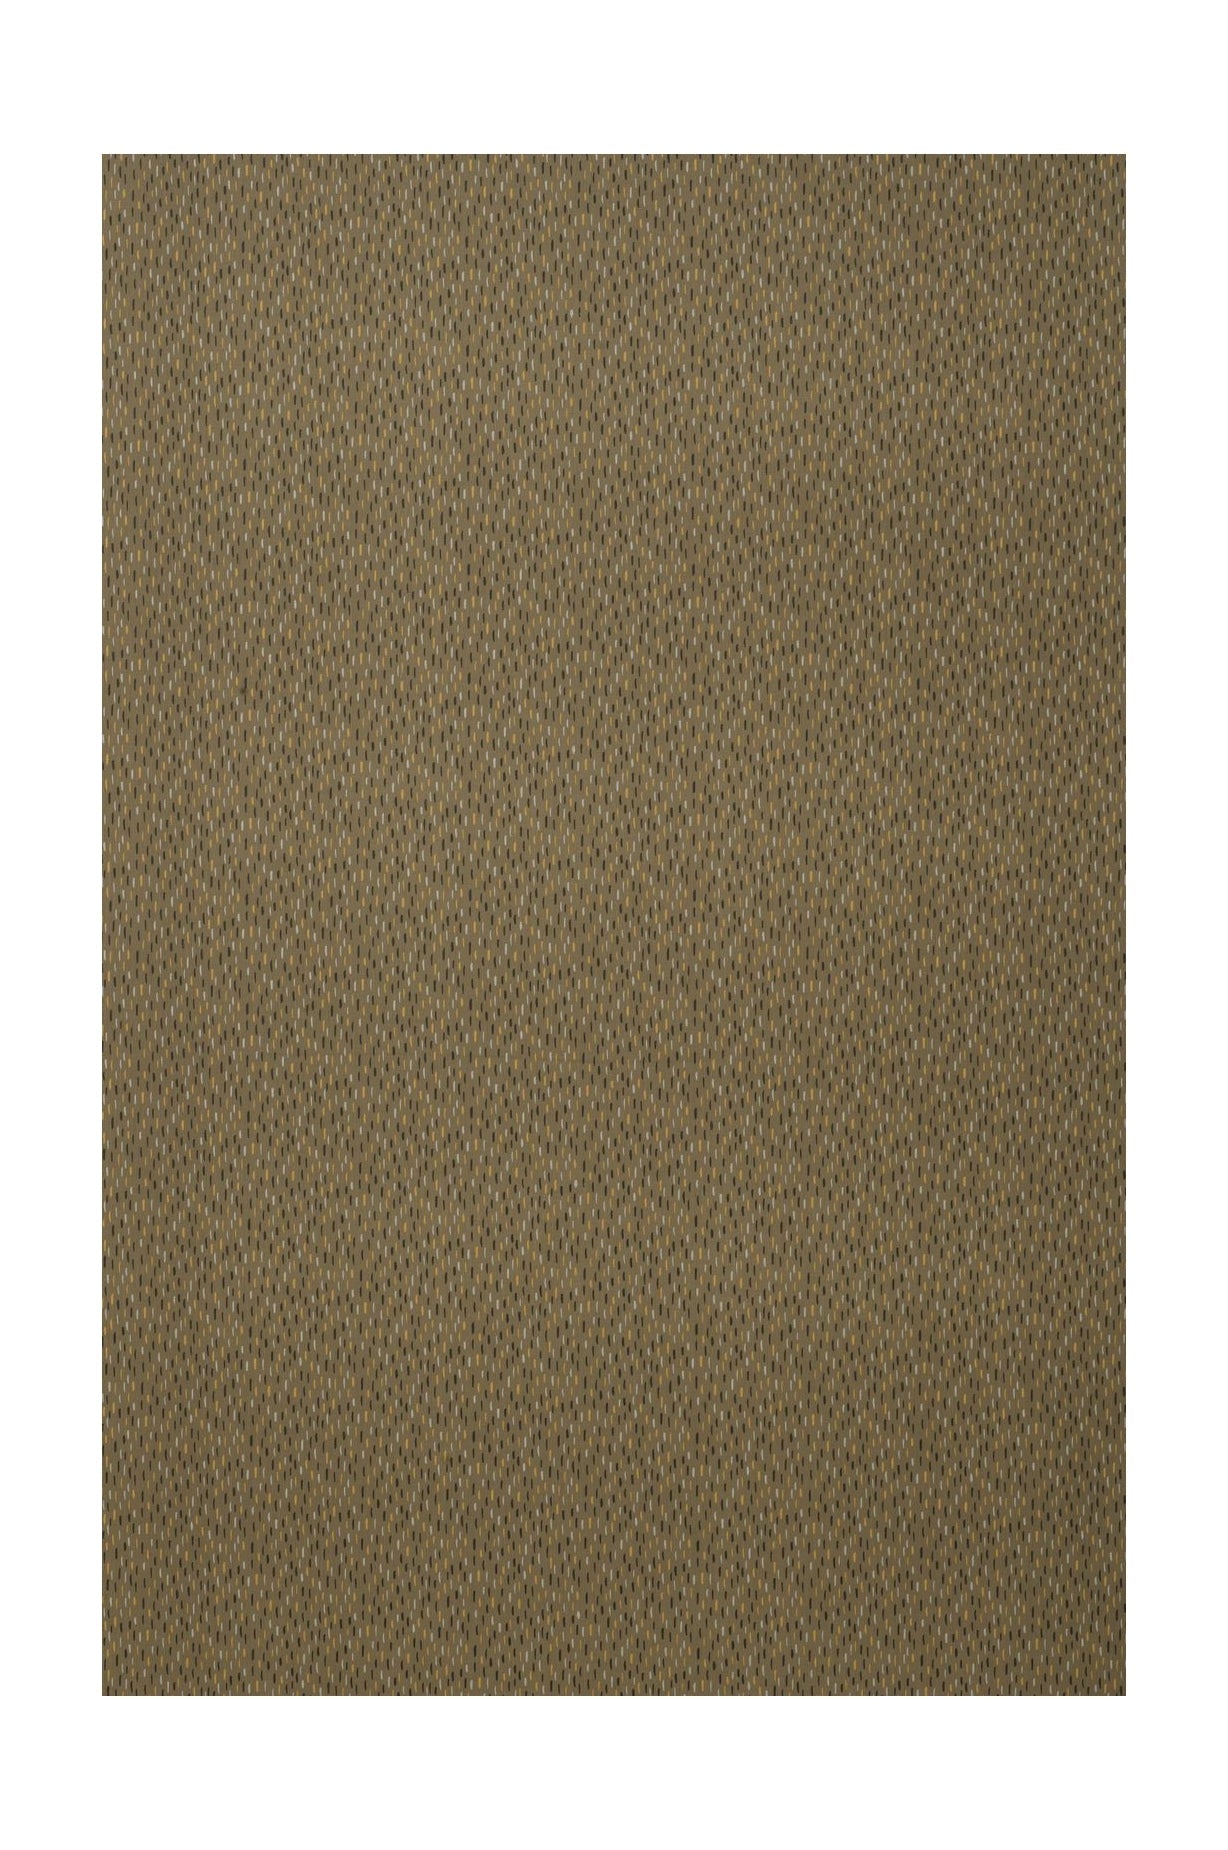 Spira Art Fabric Ancho de 150 cm (precio por metro), marrón